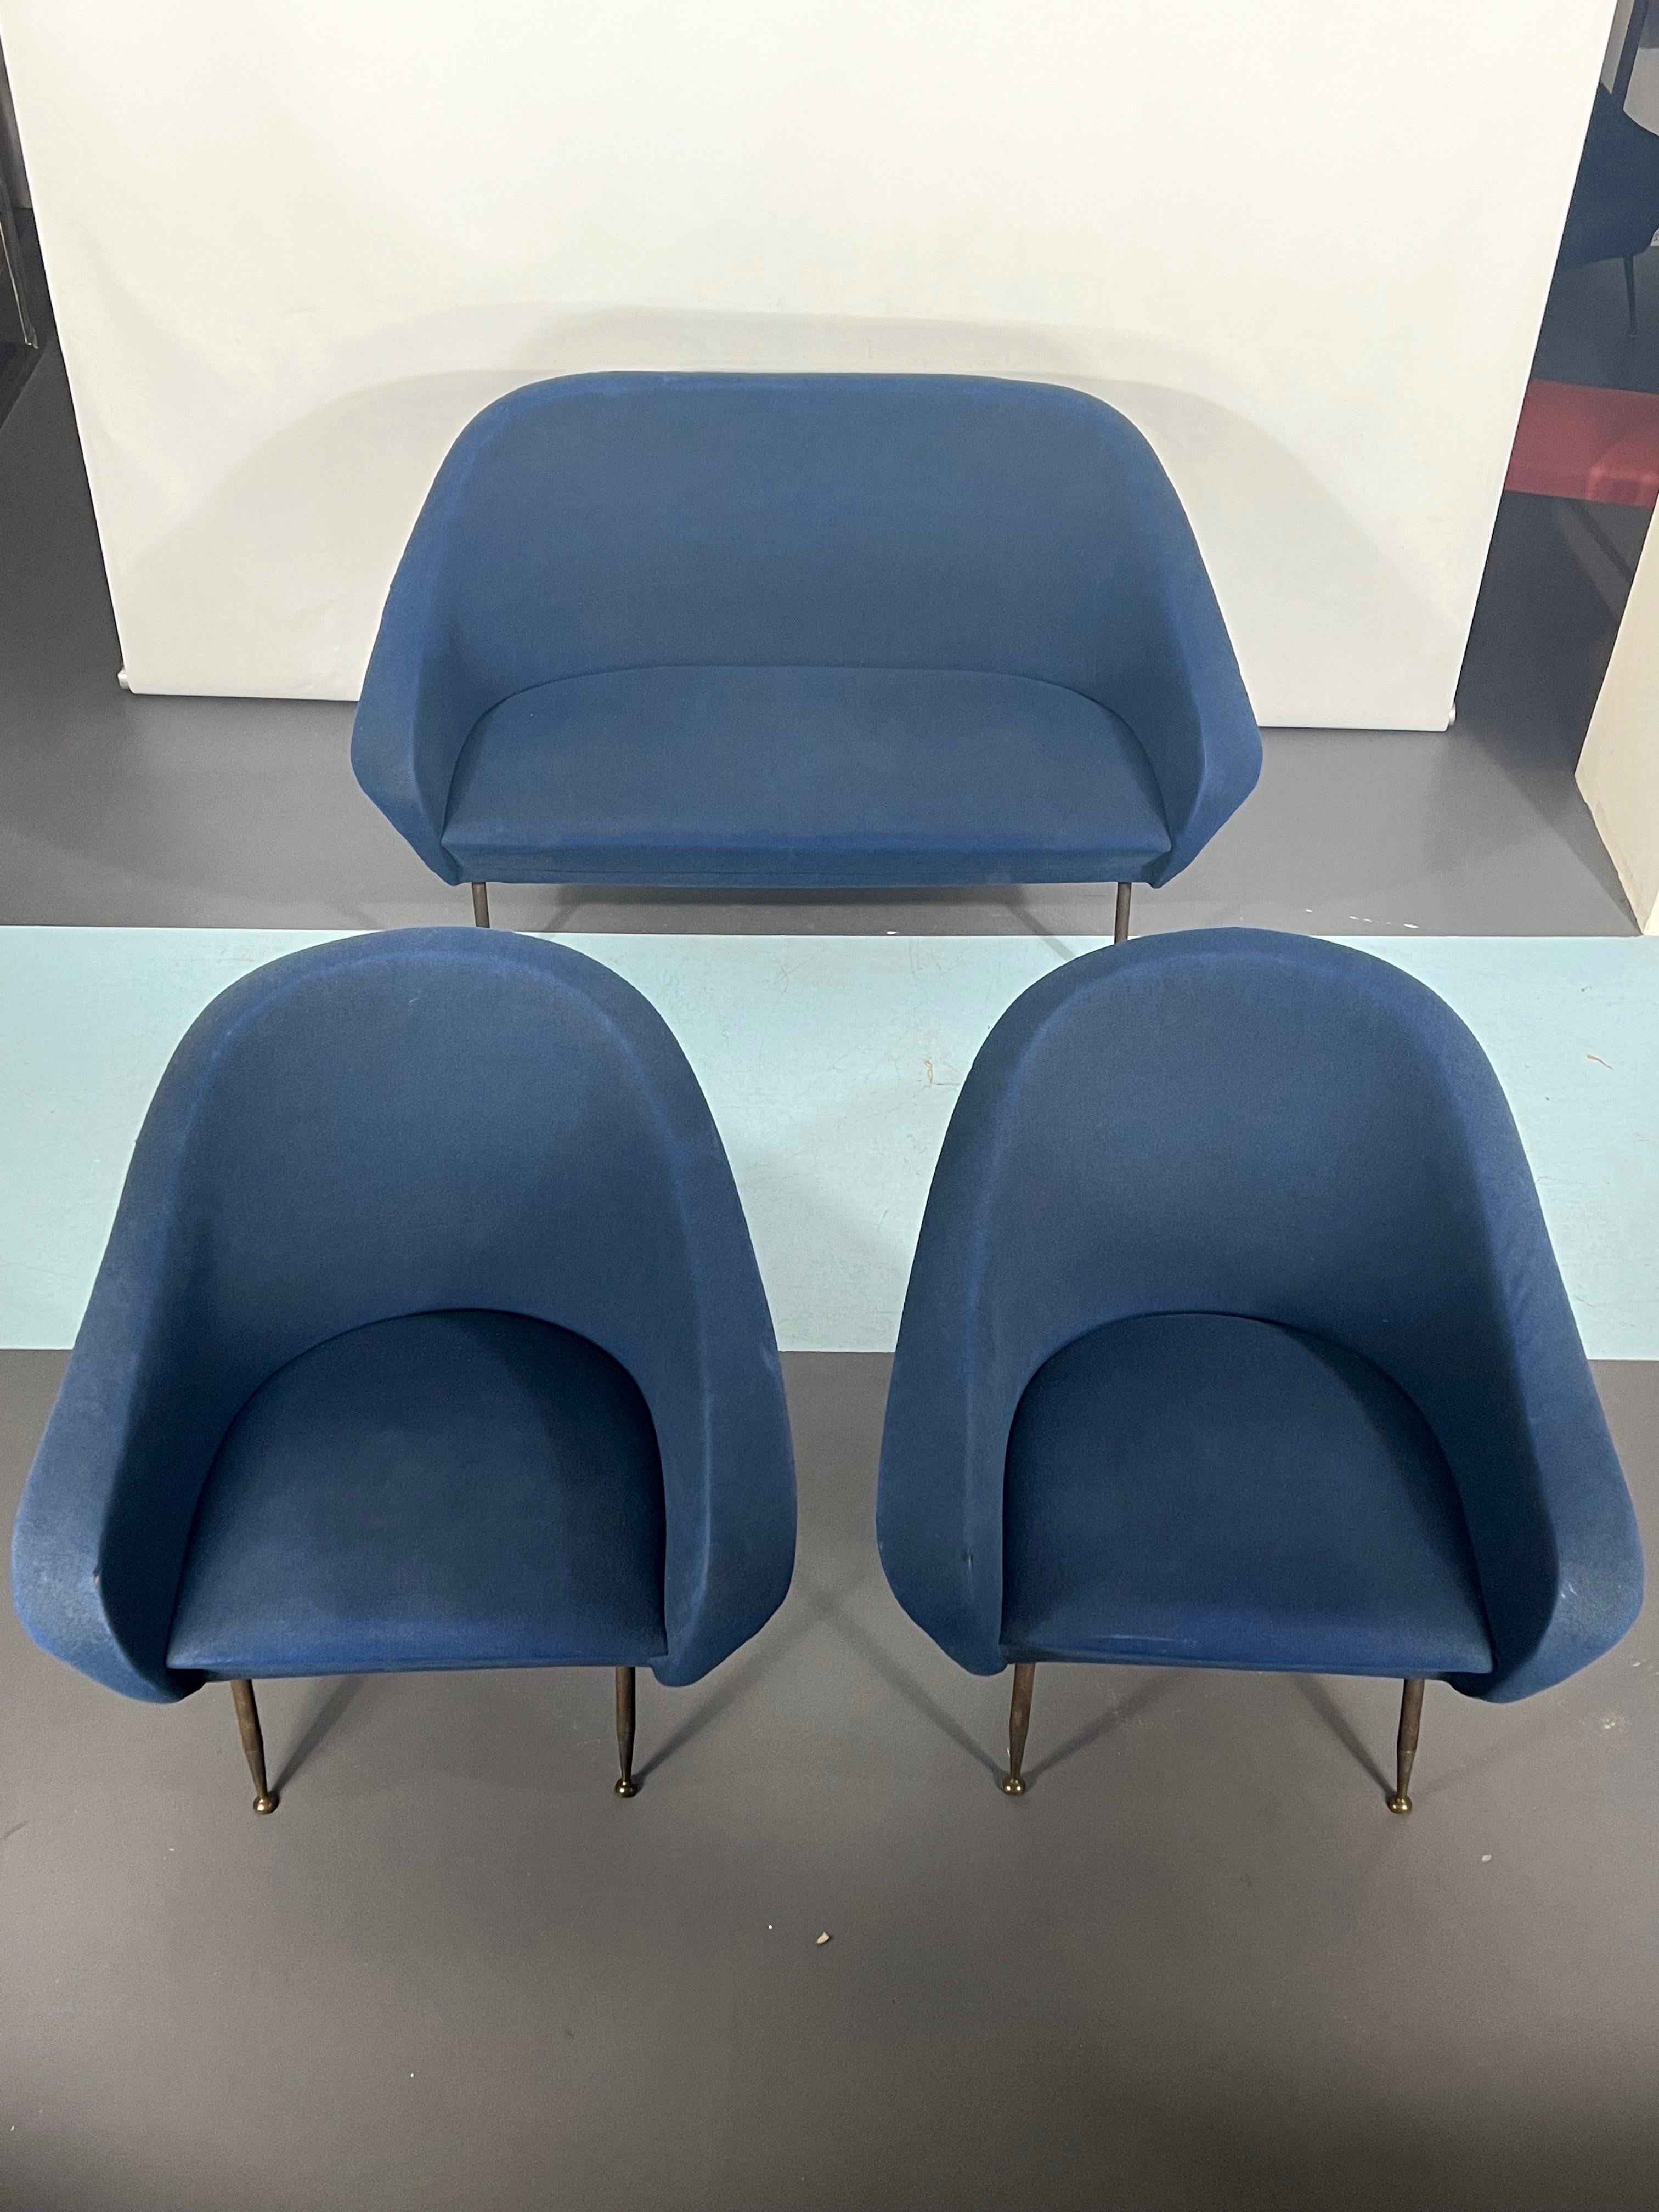 Cet ensemble composé d'un canapé et de deux fauteuils, dessiné par Gastone Rinaldi et produit par son usine Rima dans les années 50, est en parfait état avec quelques défauts sur le tissu.